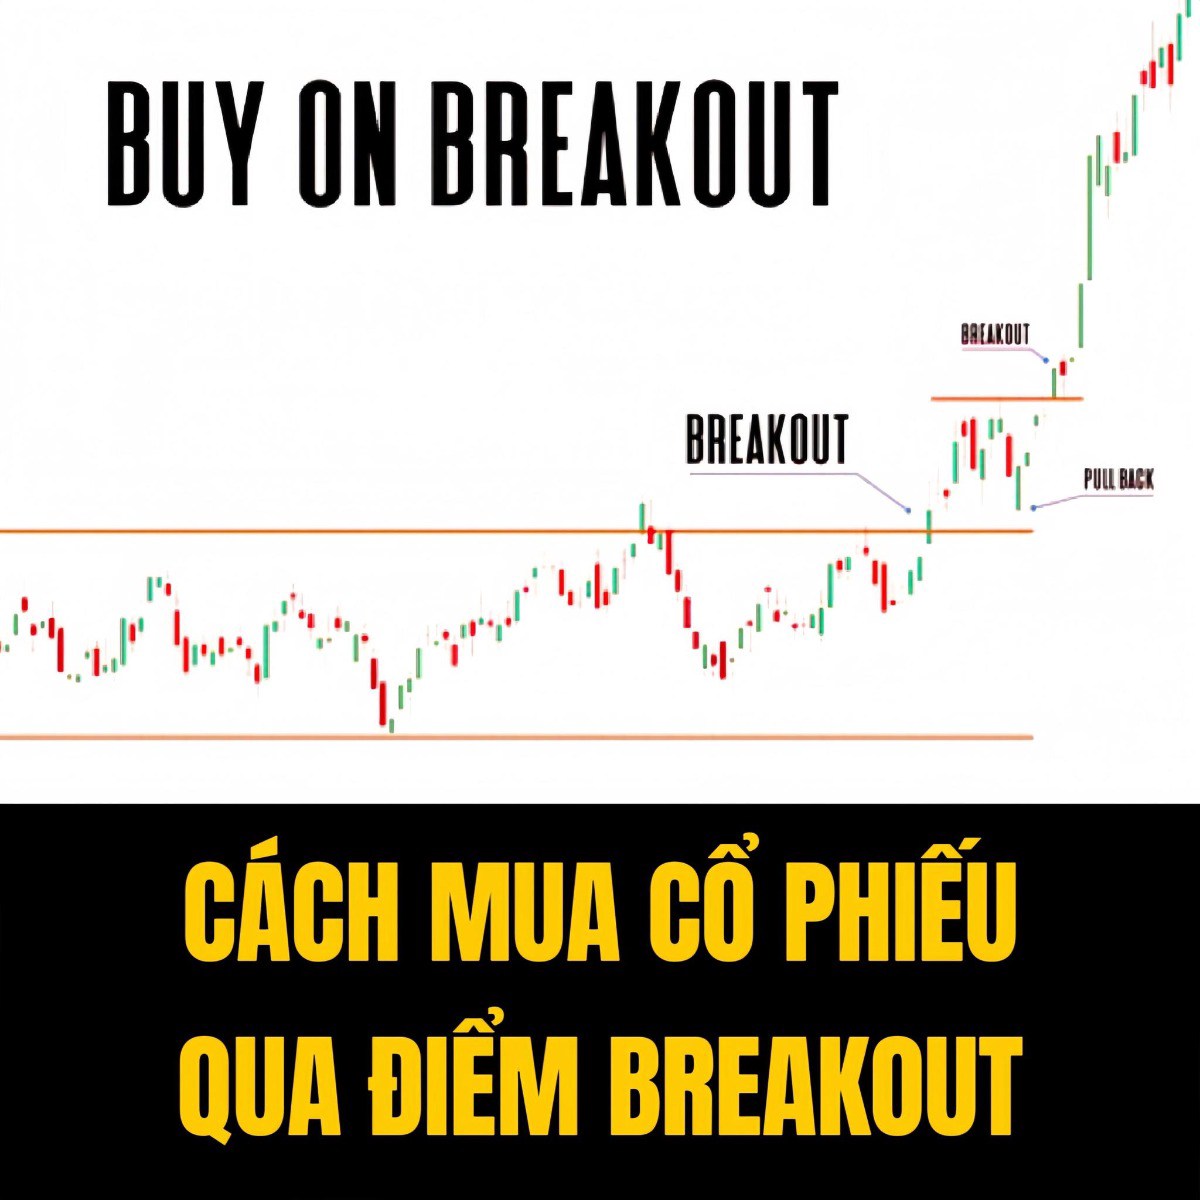 Cách mua cổ phiếu qua điểm breakout